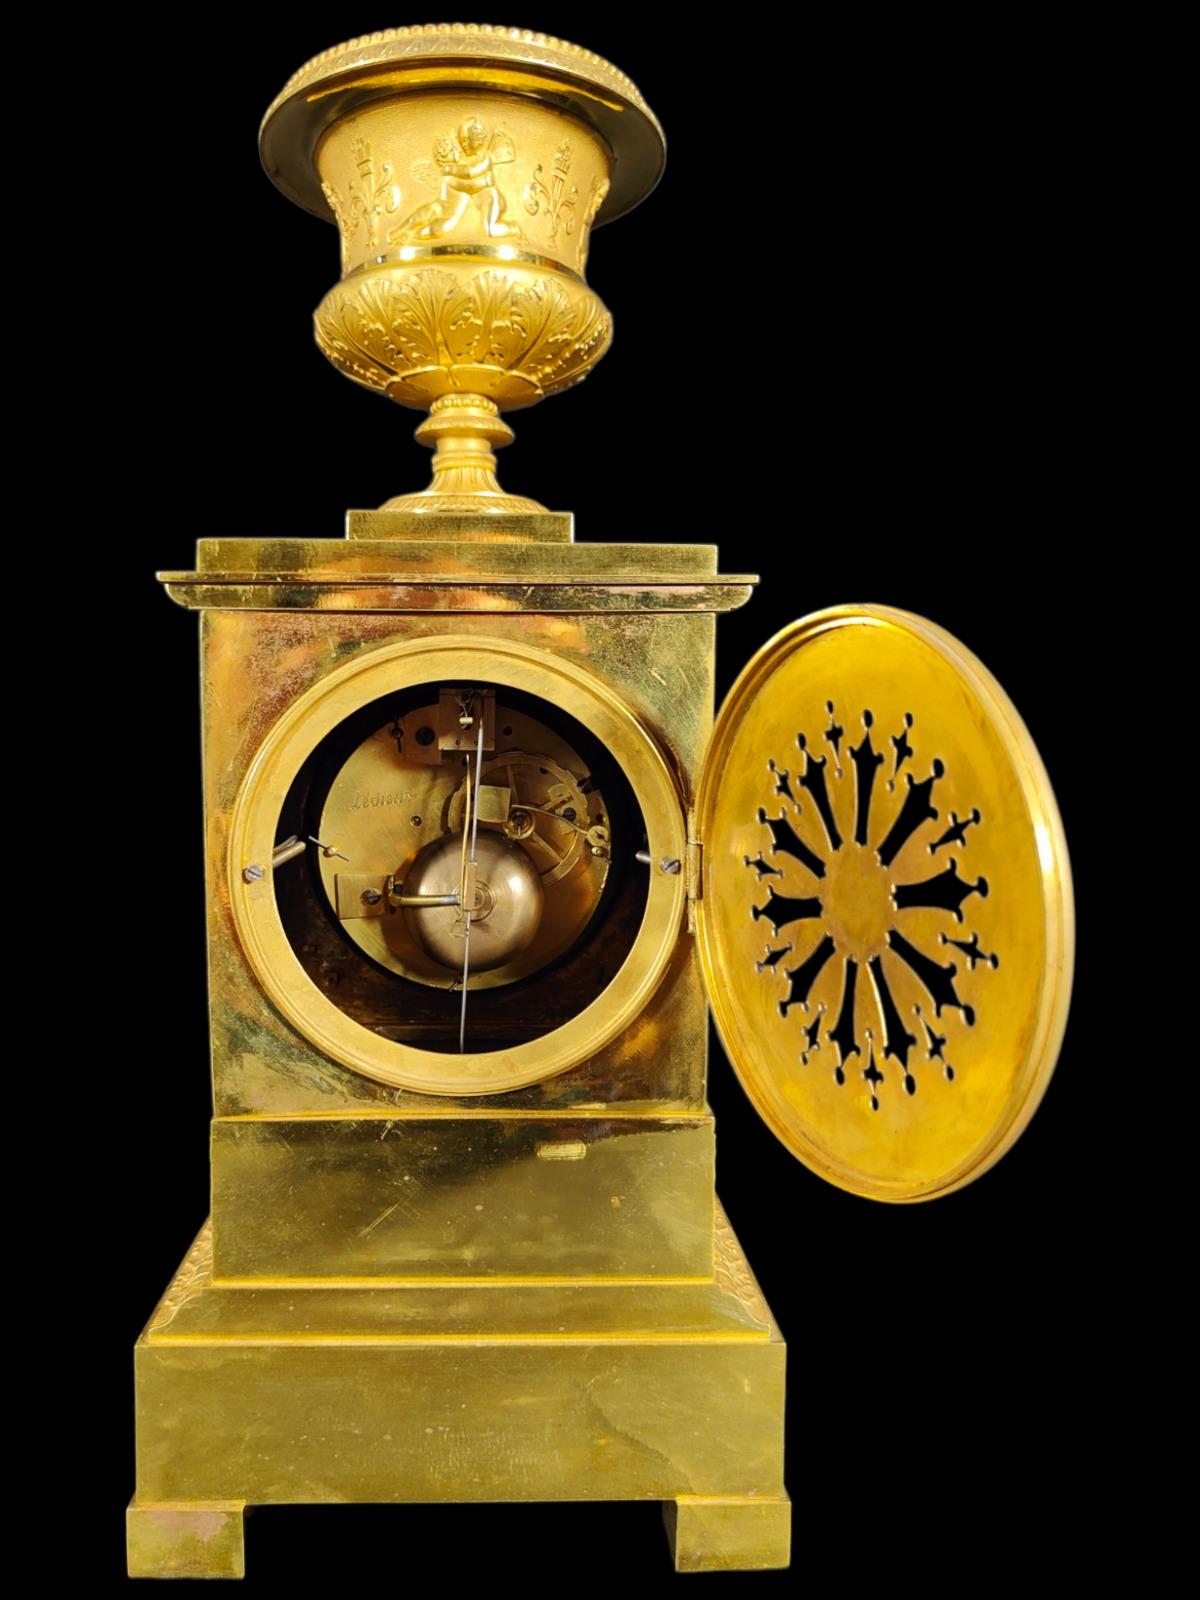 Eine feine Qualität Französisch Empire-Uhr von der bedeutenden Hersteller Ledieur, auf der Rückseite der Bewegung unterzeichnet. Das Uhrwerk ist ein 8-Tage-Glockenschlagwerk mit Seidenaufhängung und trägt die Gravur Ledieur auf der Rückwand des